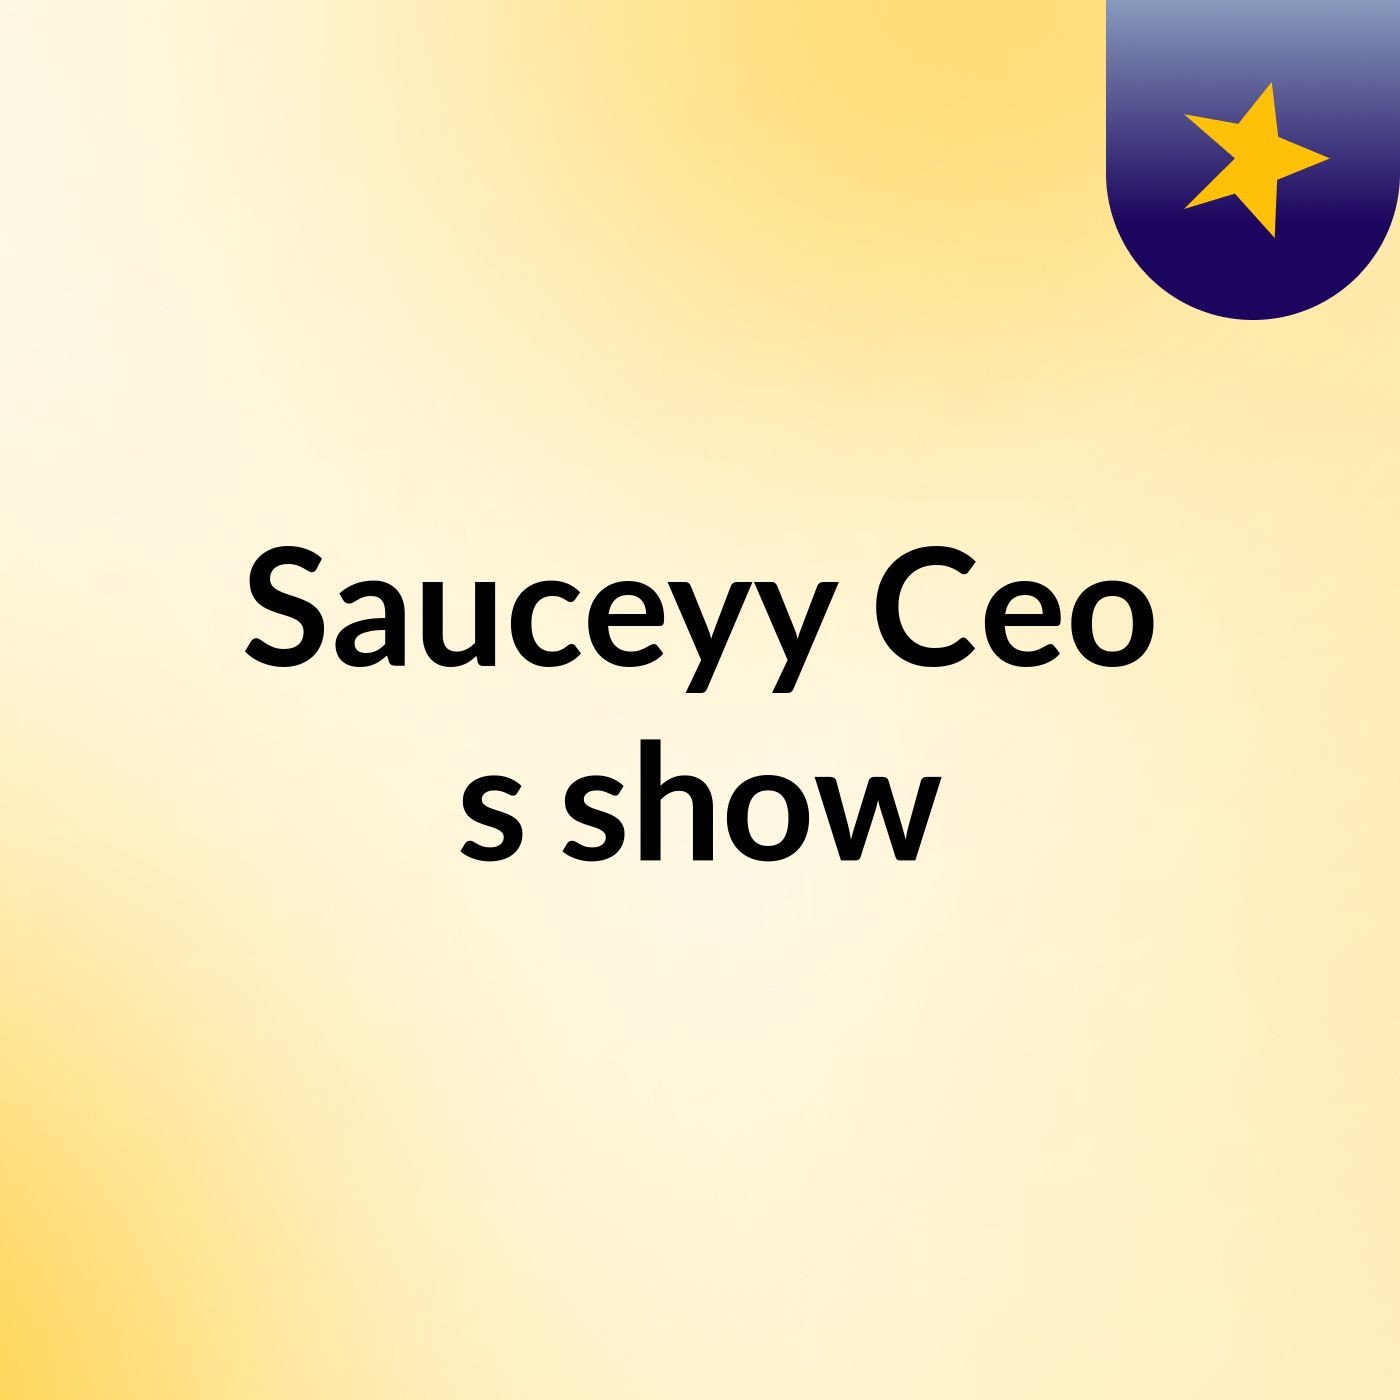 Sauceyy Ceo's show